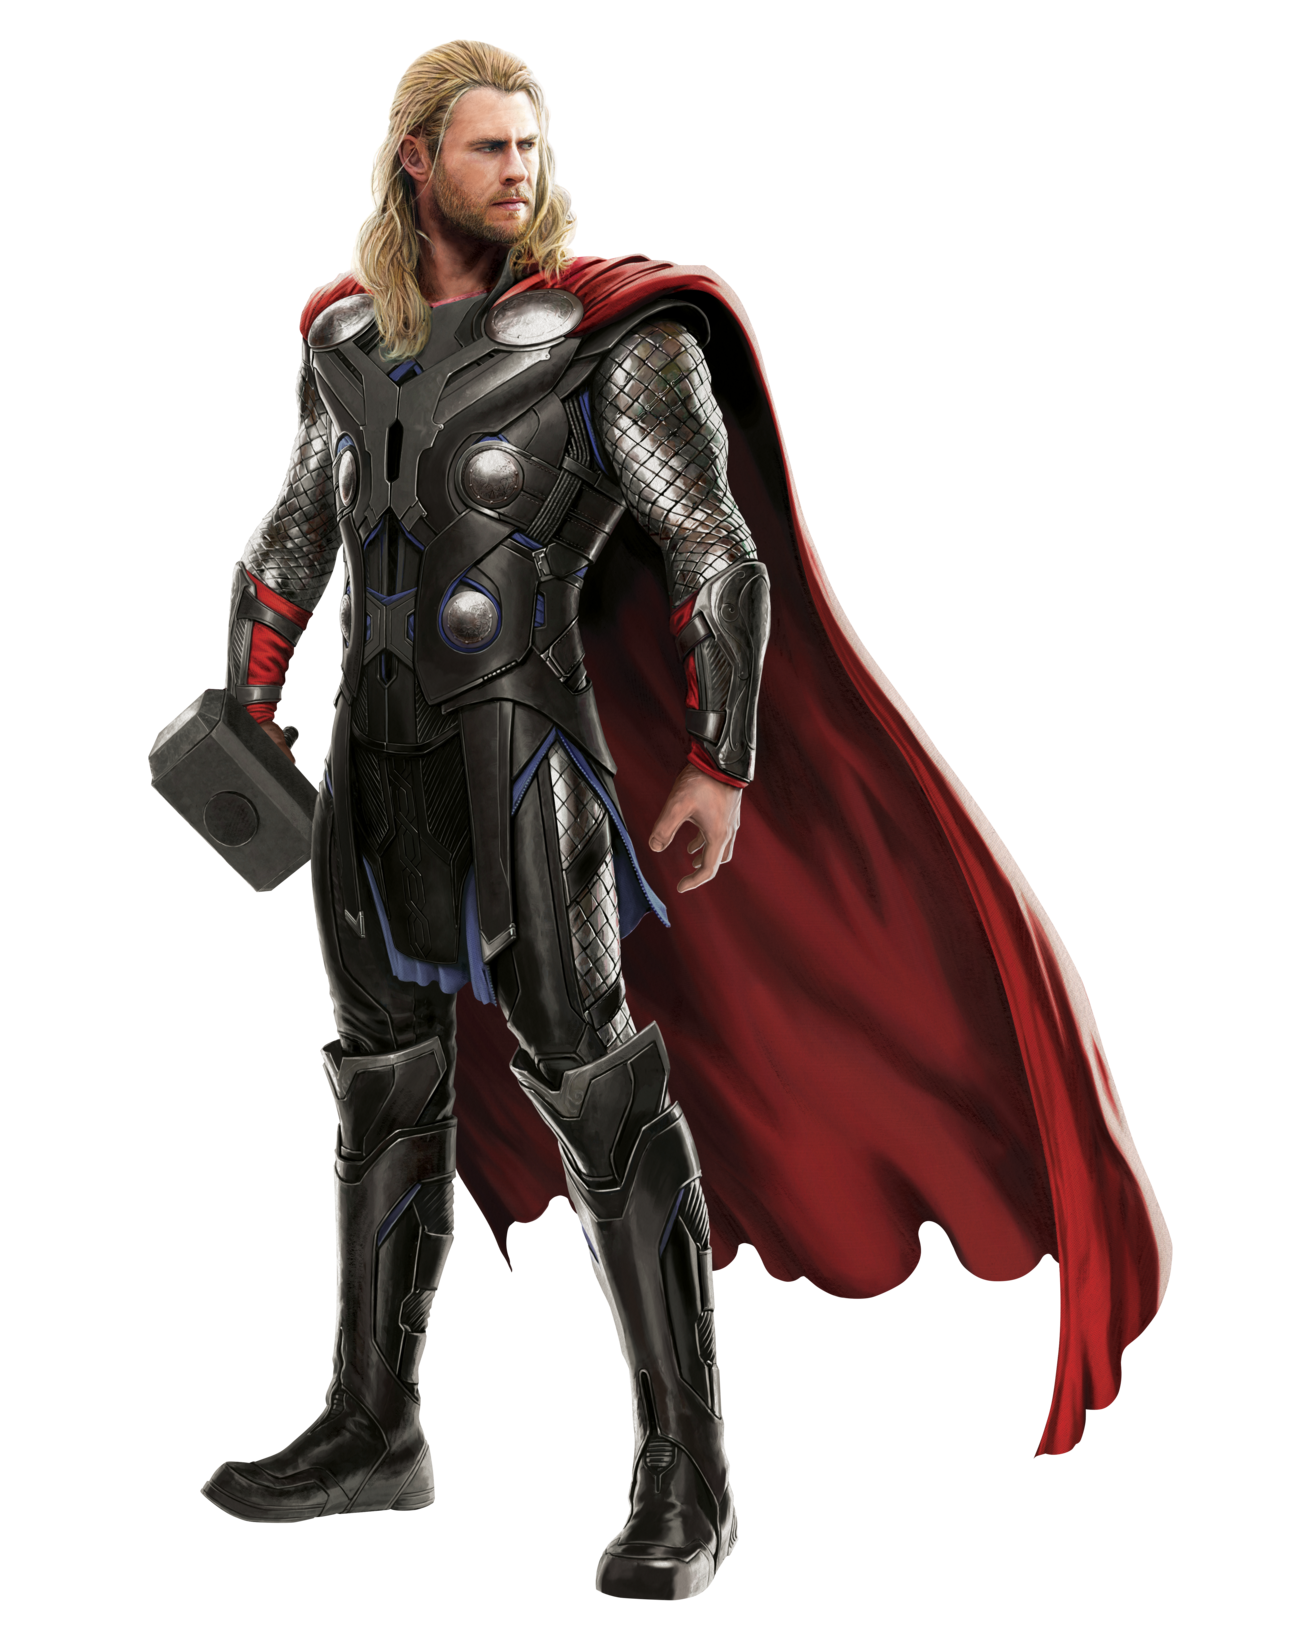 Similar Thor PNG Image